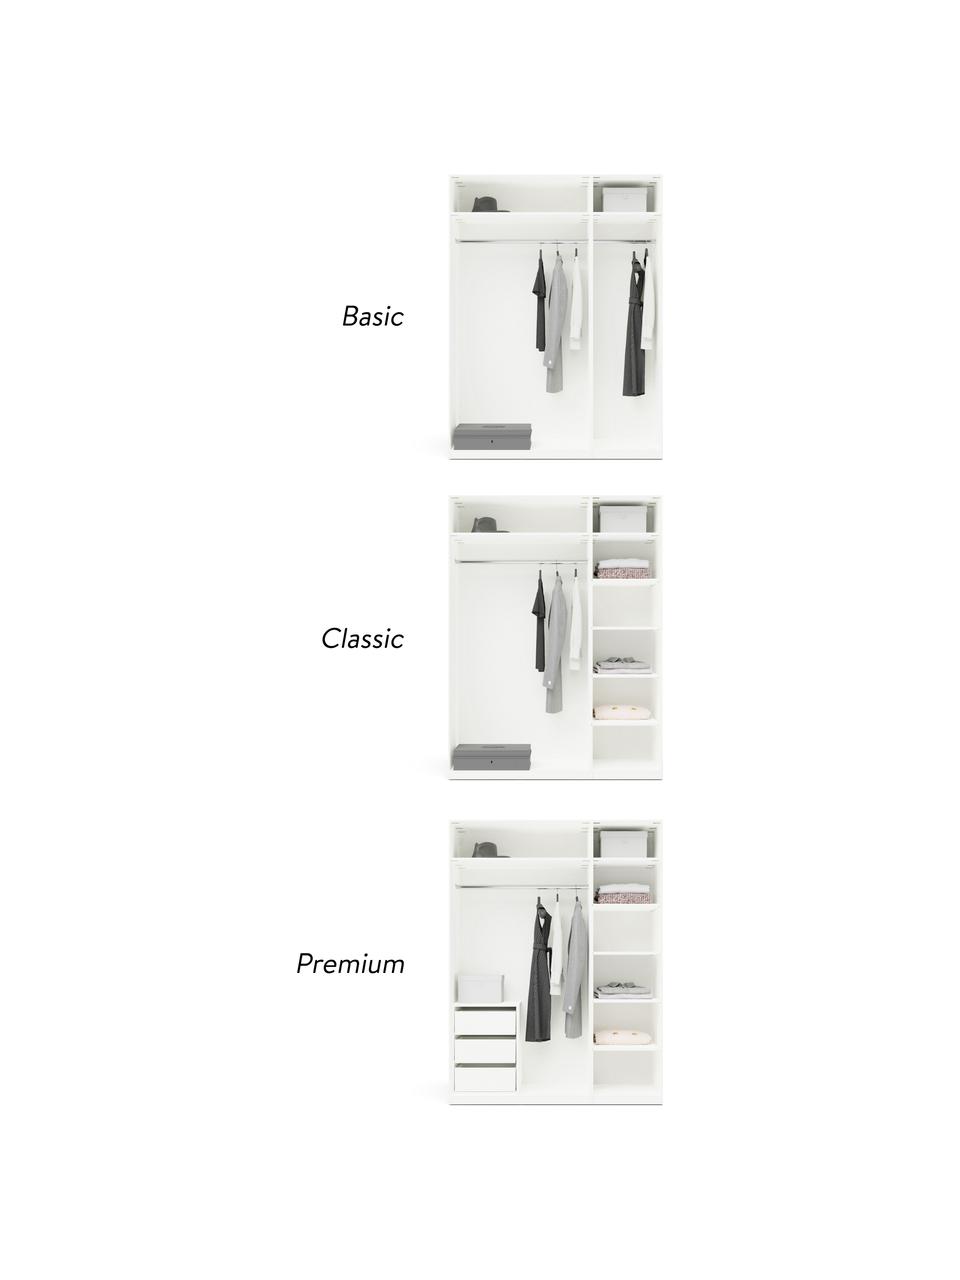 Szafa modułowa Charlotte, 3-drzwiowa, różne warianty, Korpus: płyta wiórowa pokryta mel, Biały, S 150 x W 200 cm, Basic